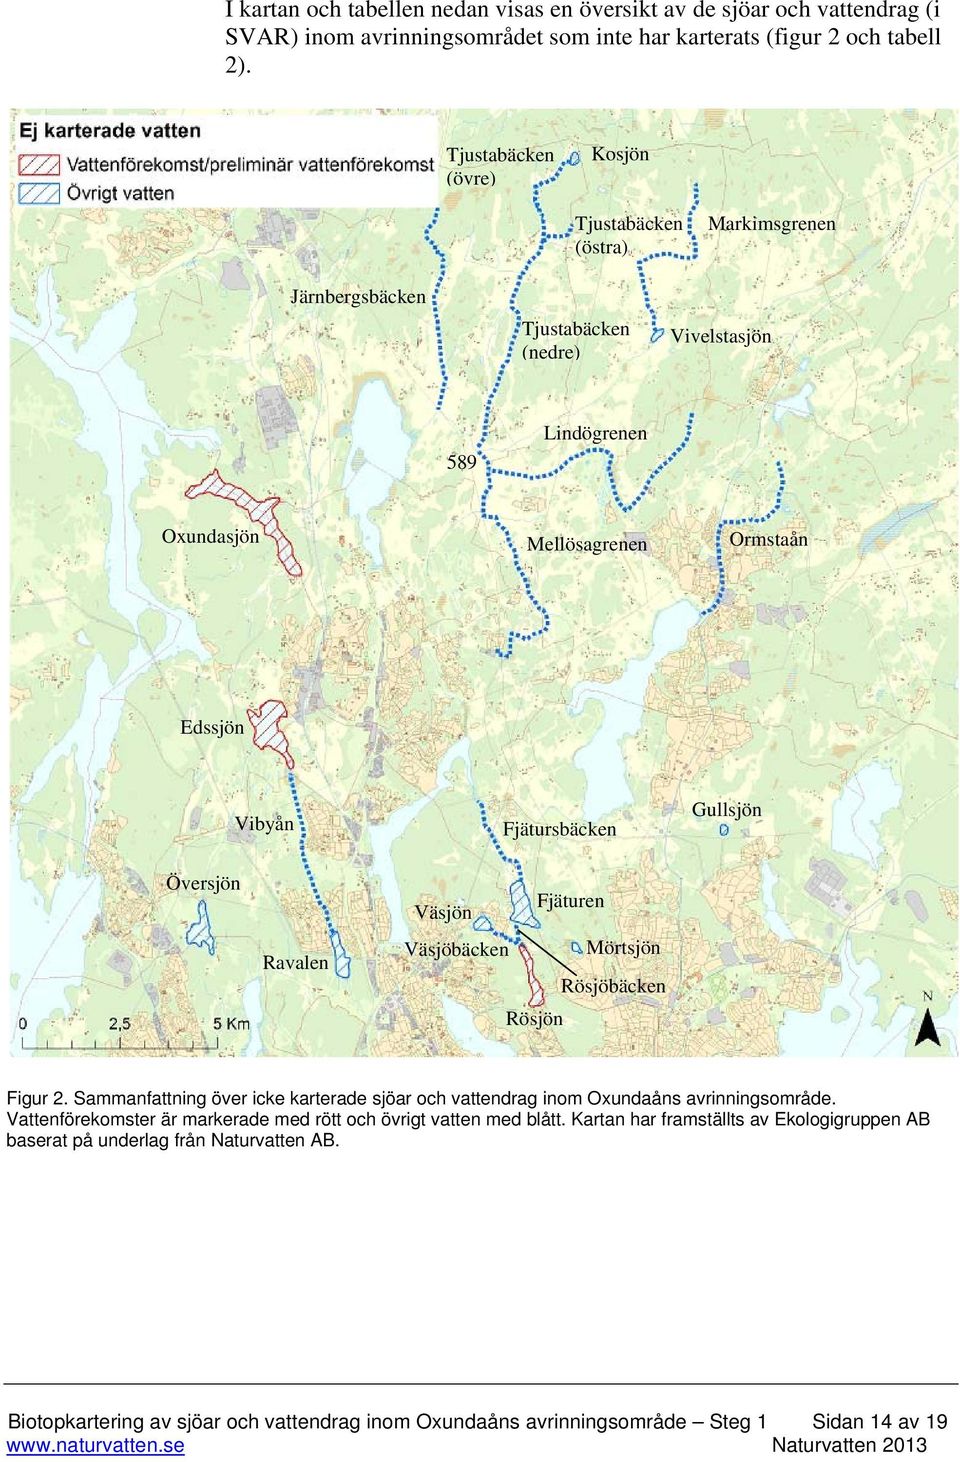 Gullsjön Översjön Ravalen Fjäturen Väsjön Väsjöbäcken Mörtsjön Rösjöbäcken Rösjön Figur 2. Sammanfattning över icke karterade sjöar och vattendrag inom Oxundaåns avrinningsområde.